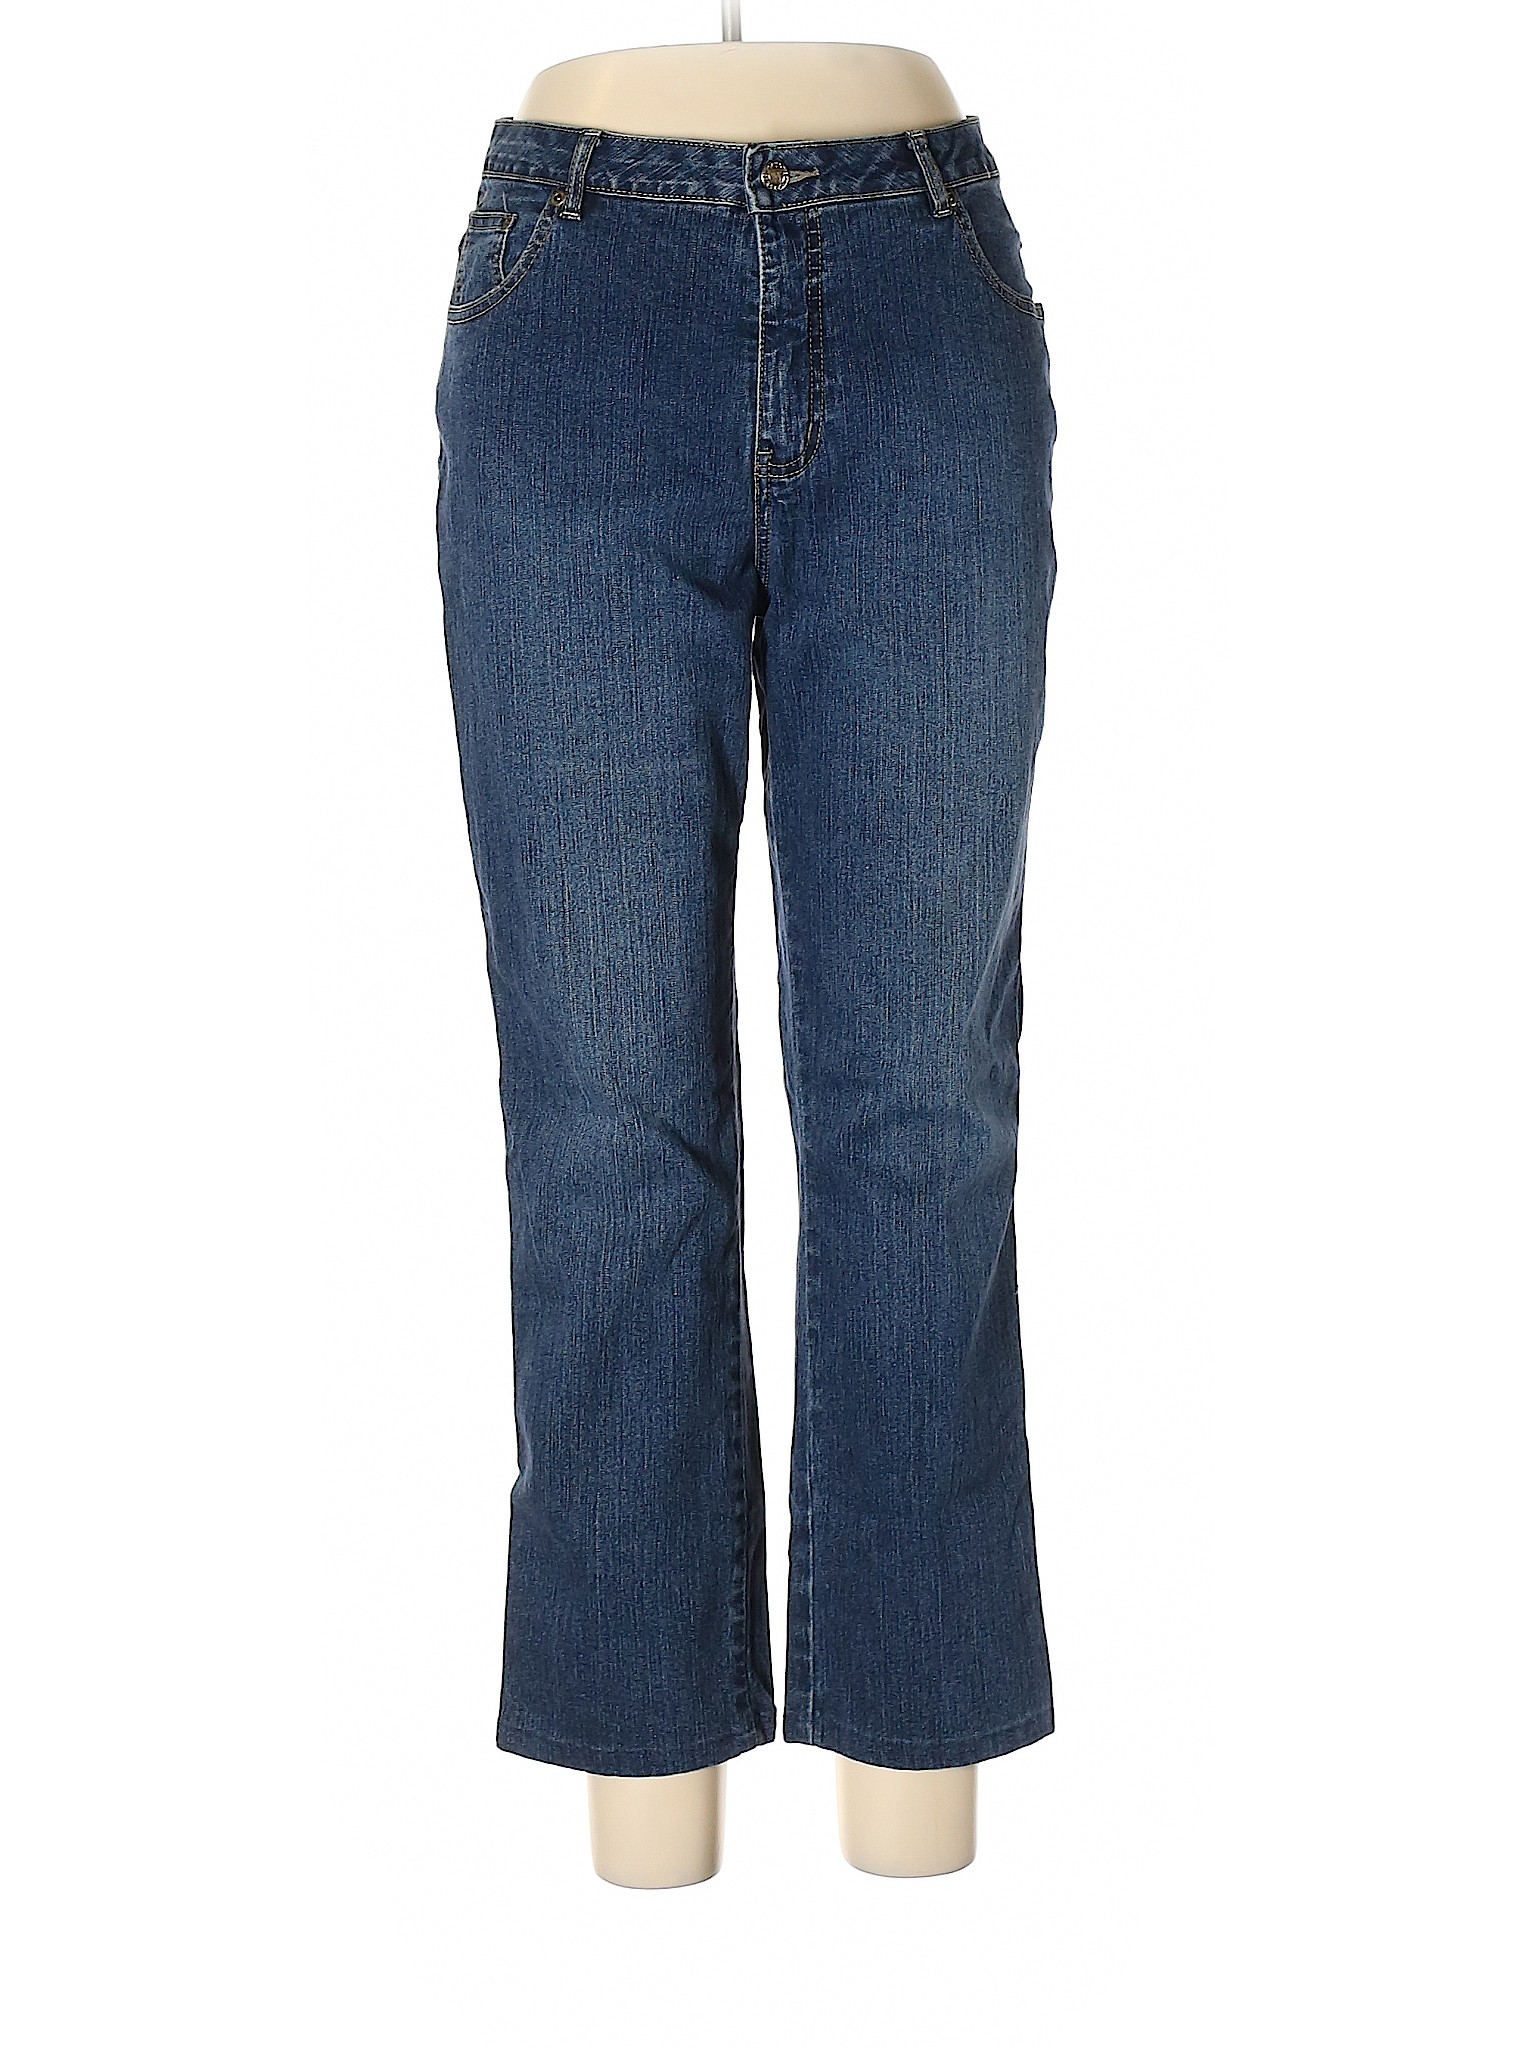 Westport Women Blue Jeans 12 | eBay